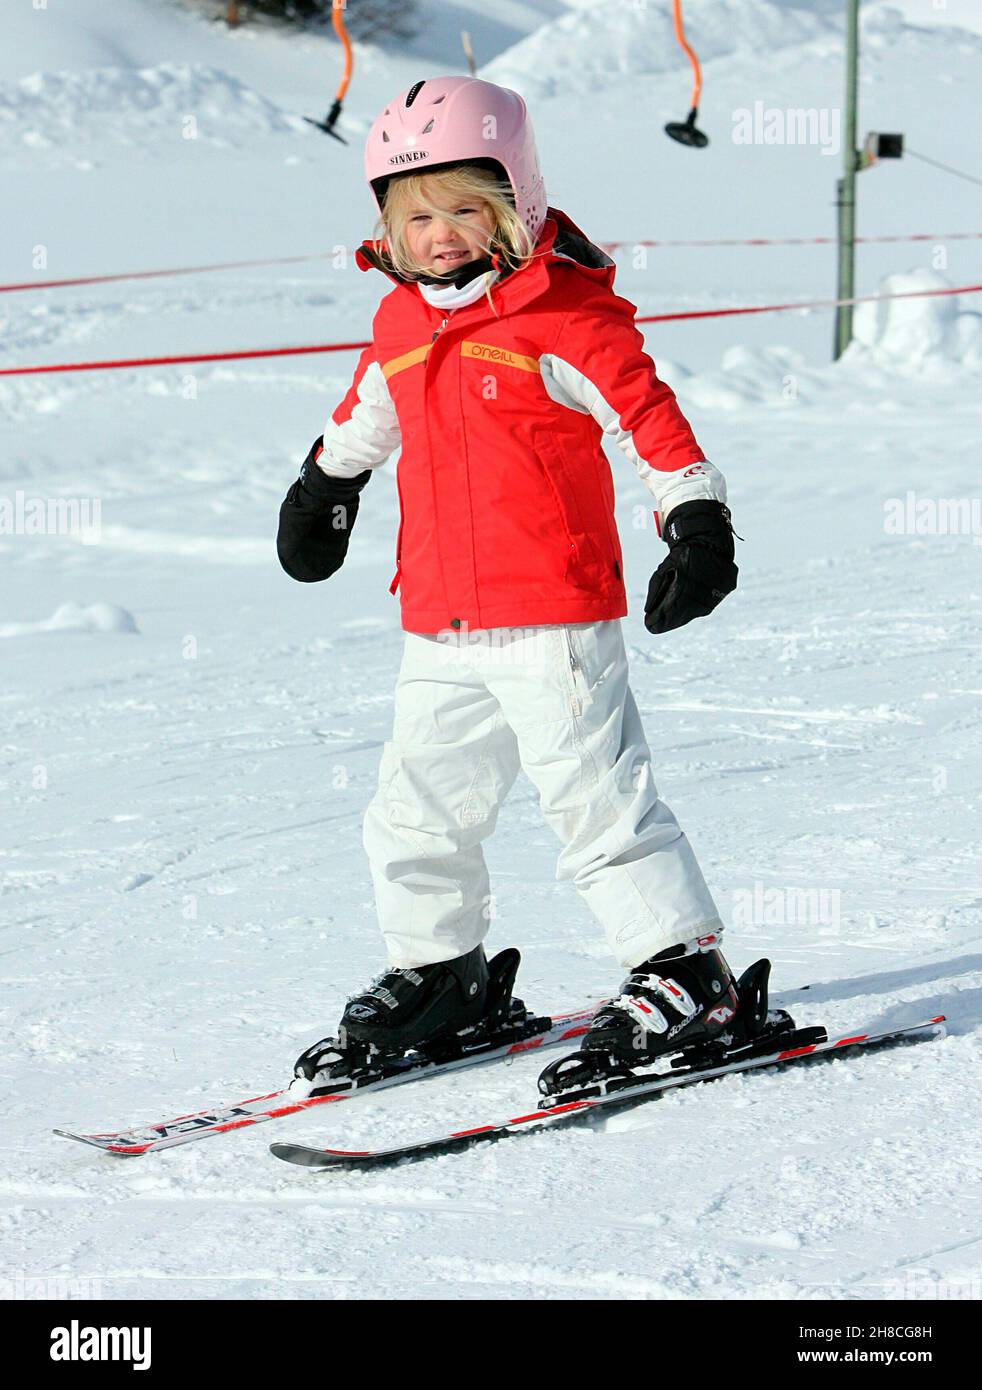 Kind Kinder Tochter Toechter Prinzessin Amalia von Holland, der Niederlande, der Niederlande Inverno Schnee Urlaub Wintersport Familie Skianzug Ski Skifahren Skihelm *** Local Caption *** 00217539 Foto Stock